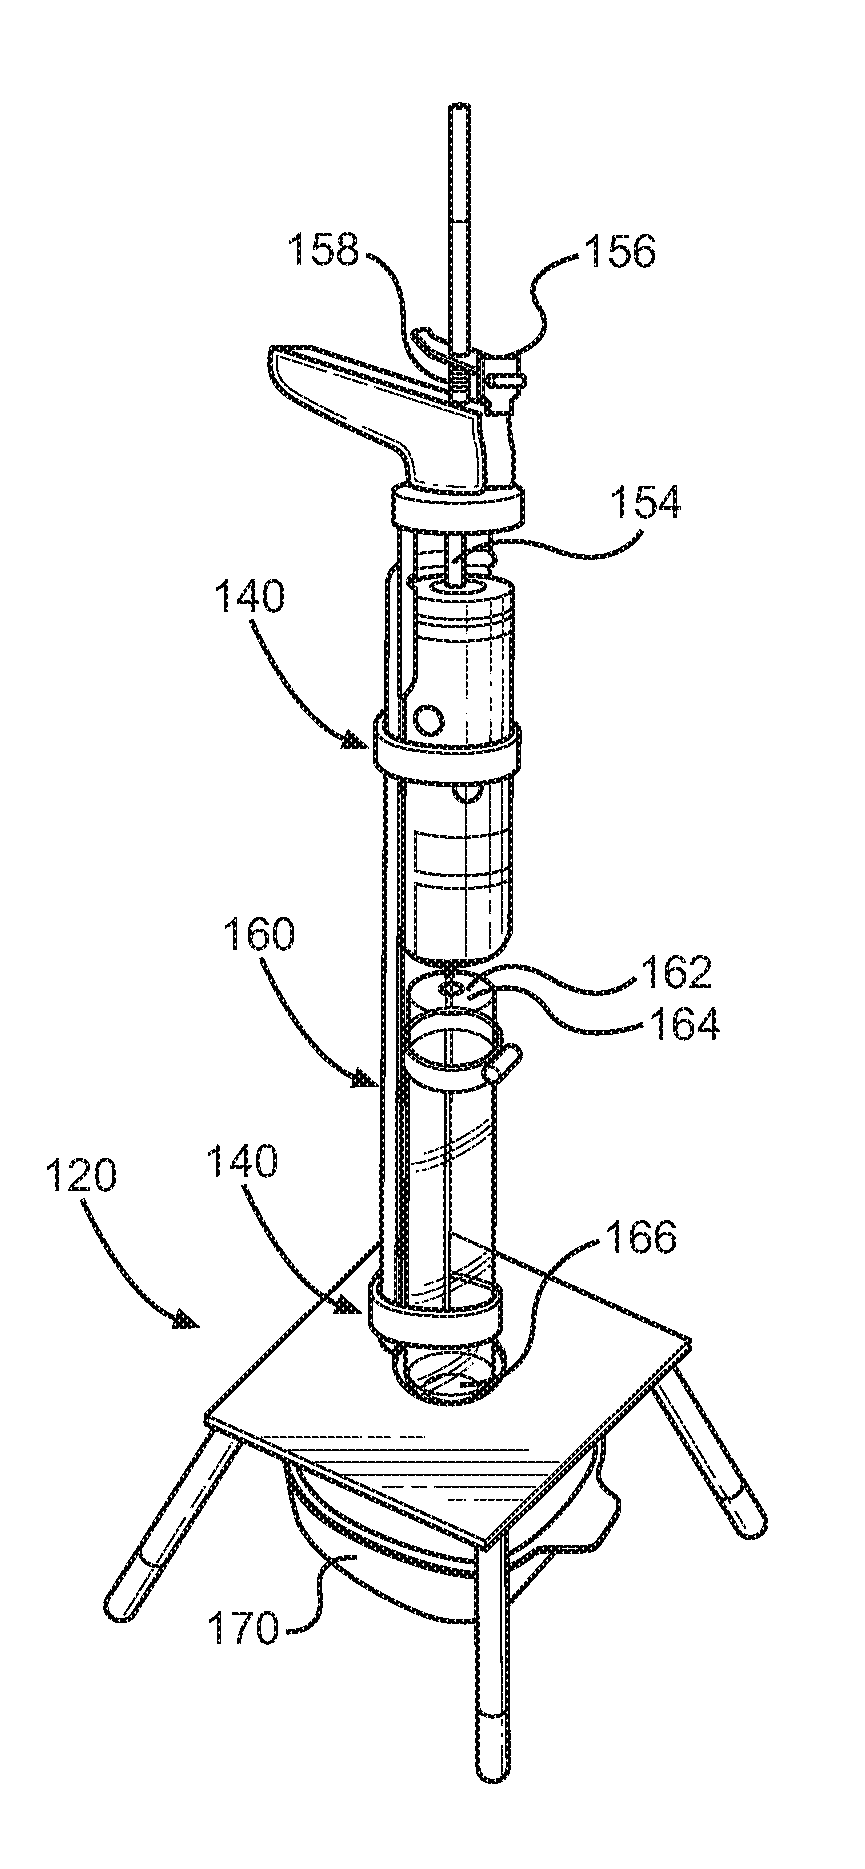 Butane dispensing apparatus